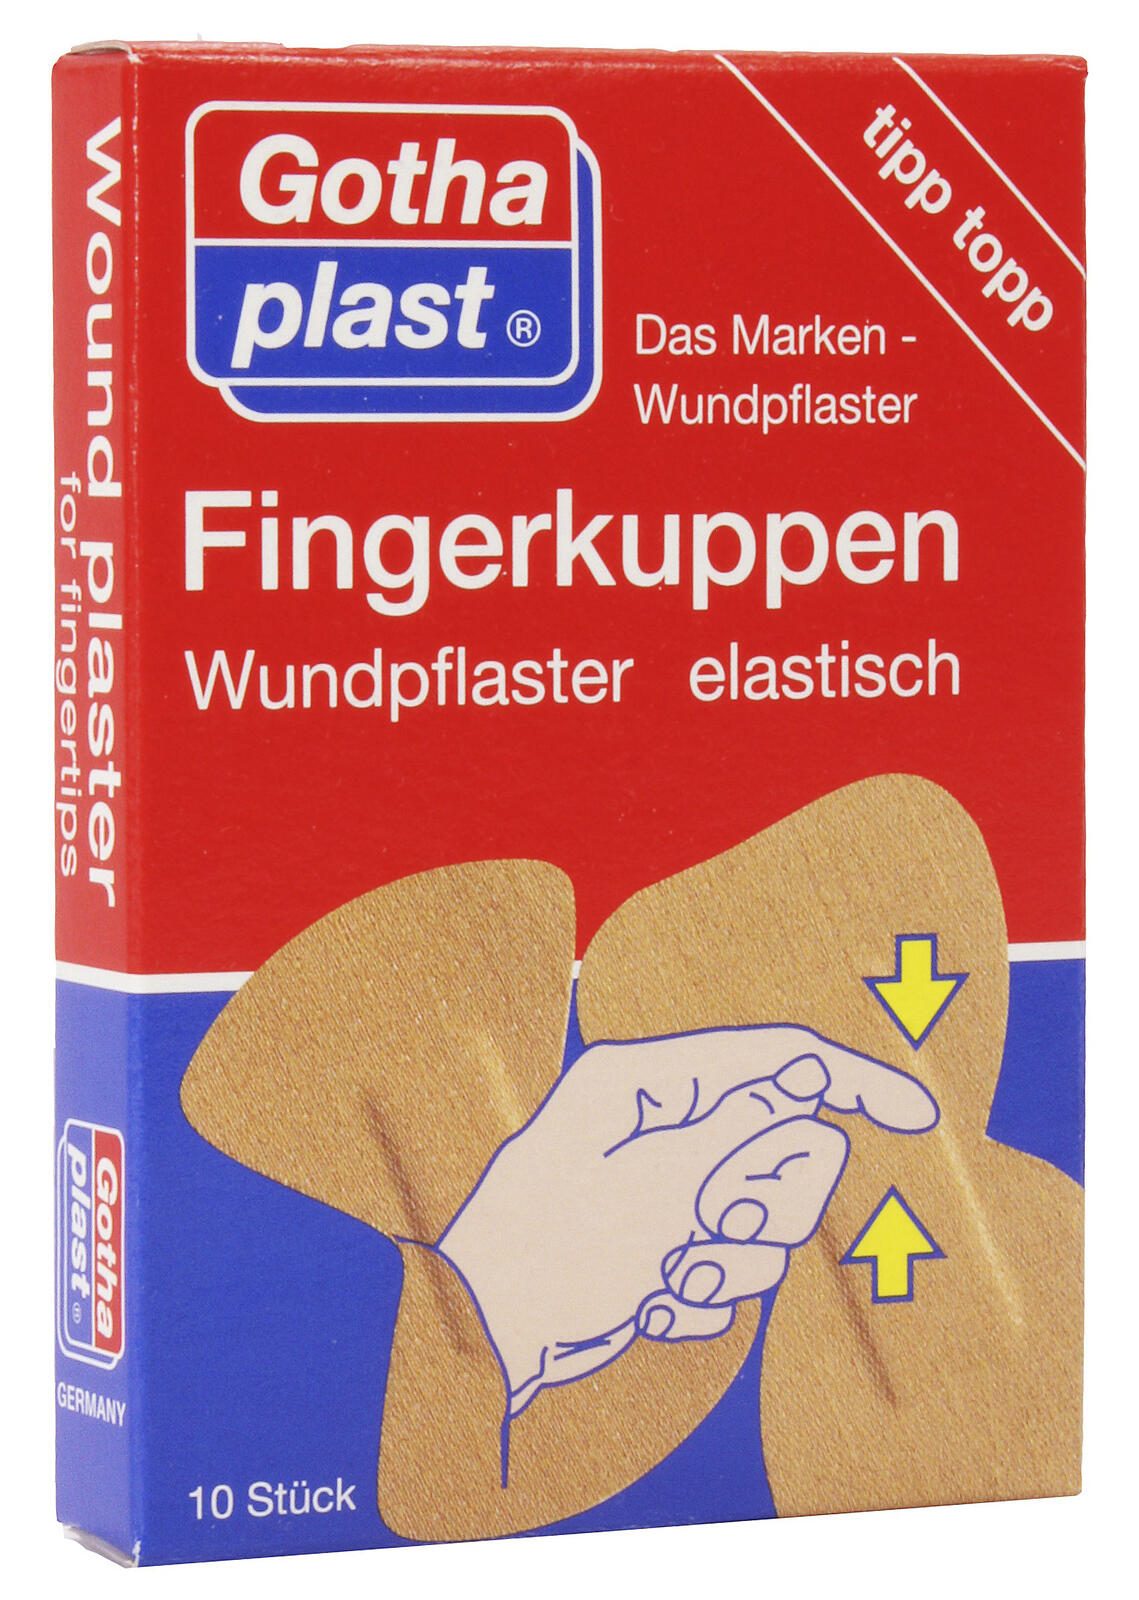 Gothaplast Fingerkuppenpflaster 10.5 cm x 1.5 cm beige 10 St.